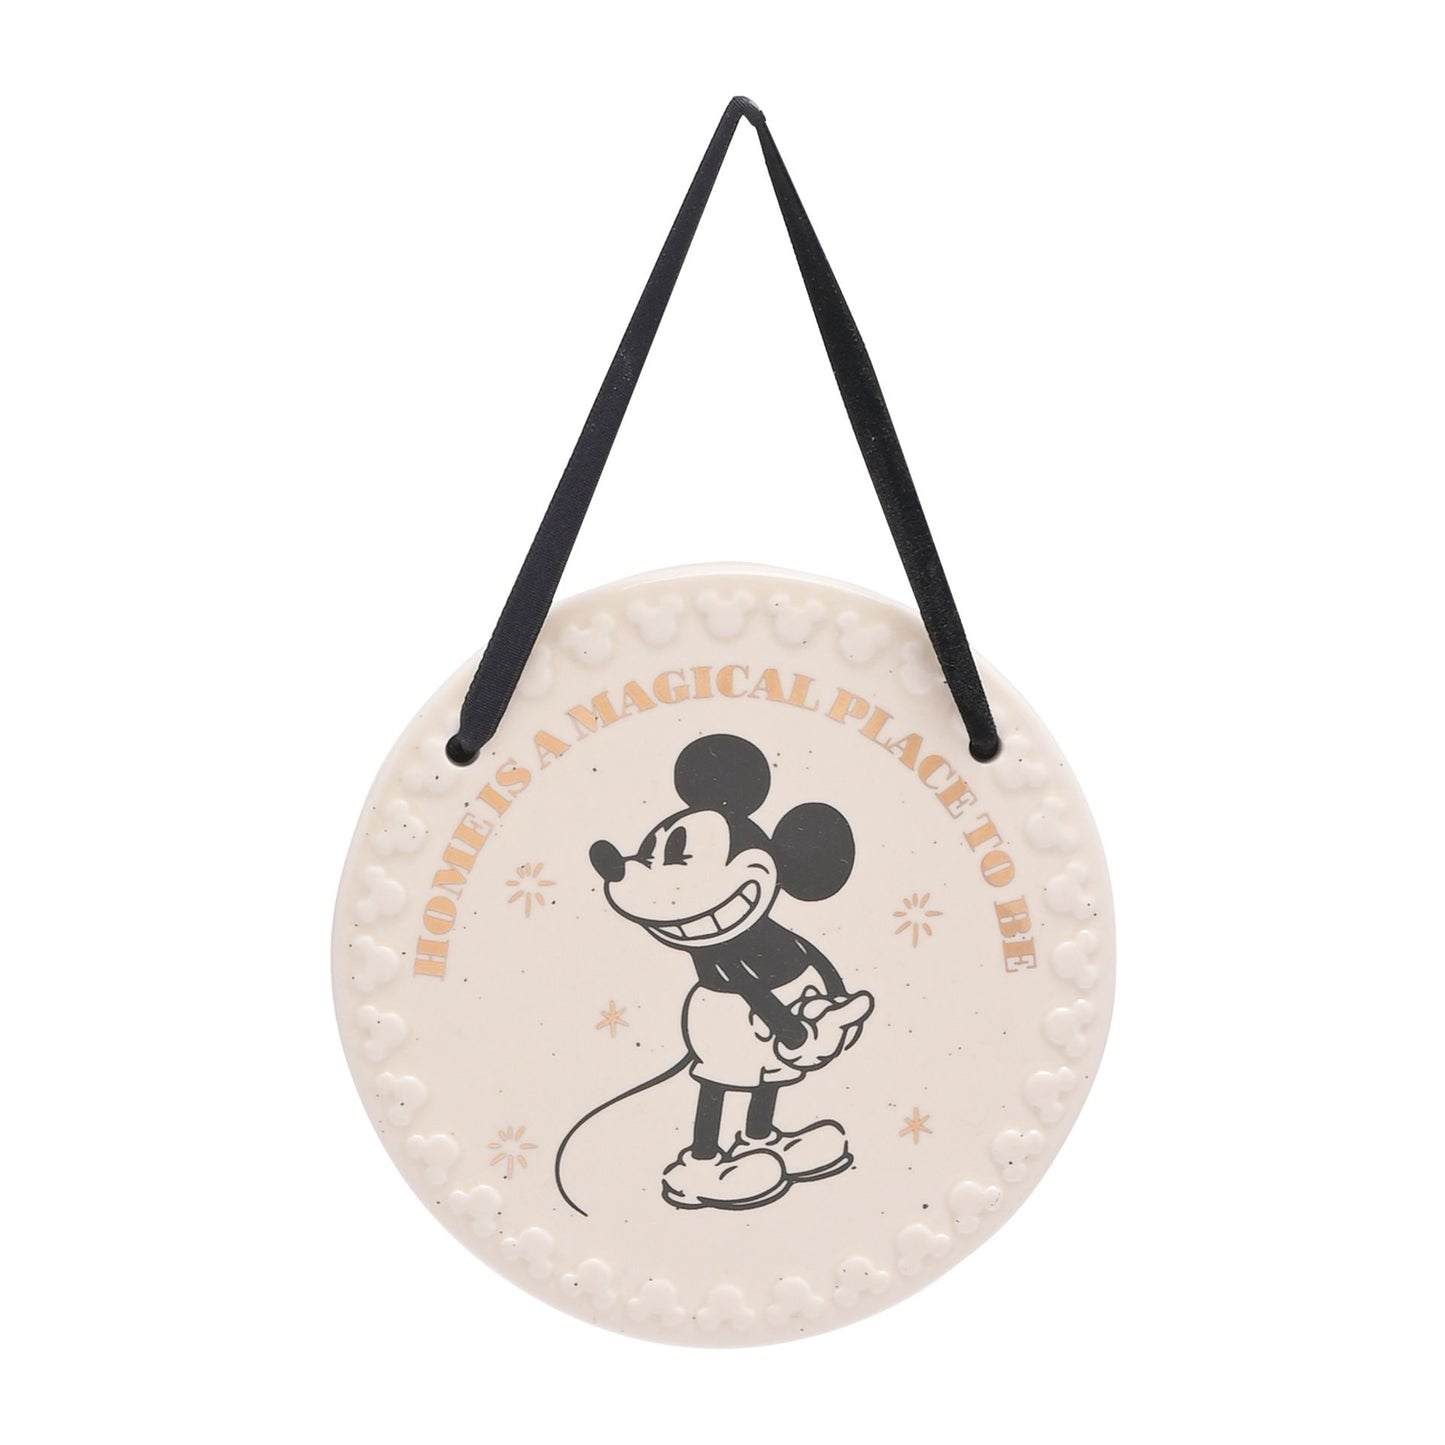 "Disney Home Mickey Wandbordje: Breng de vrolijke Mickey Mouse naar je interieur met dit charmante wandbordje, ideaal voor Disney-liefhebbers die hun huis willen opvrolijken."